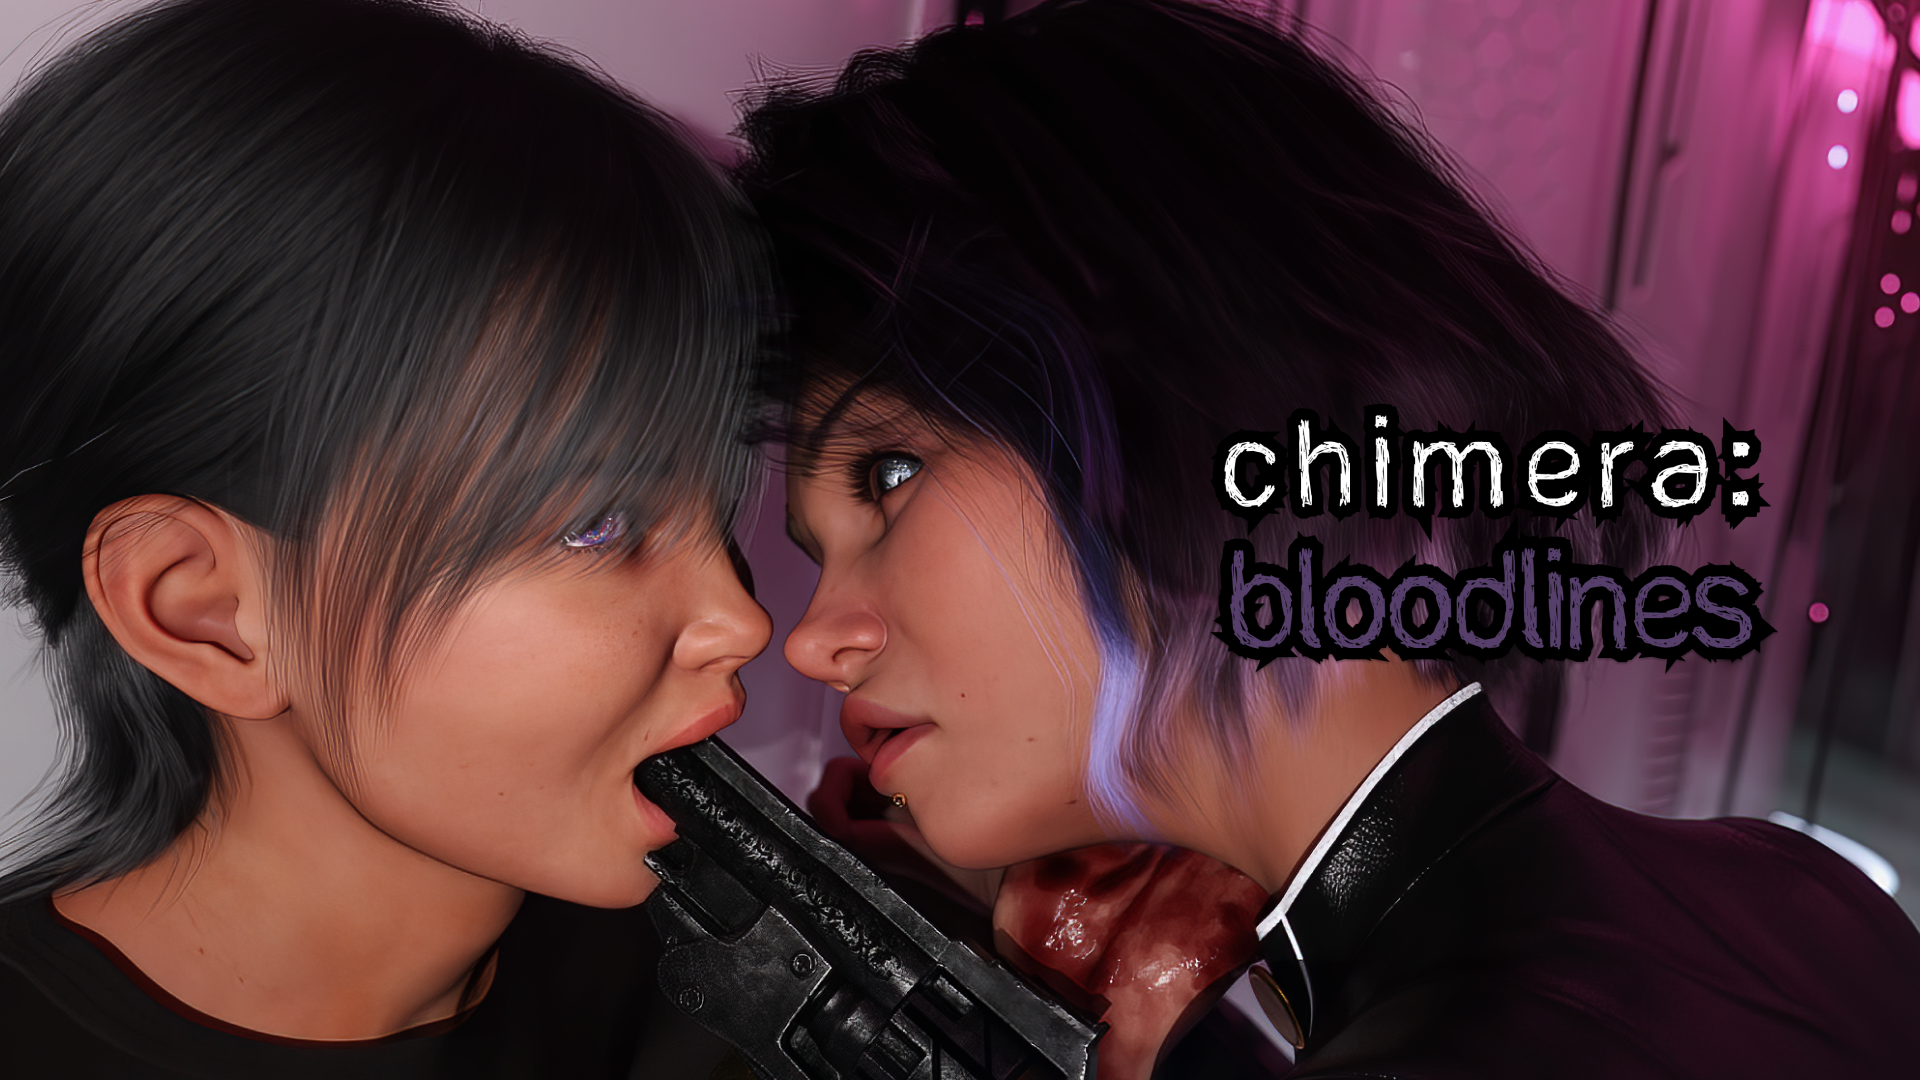 Chimera: Bloodlines